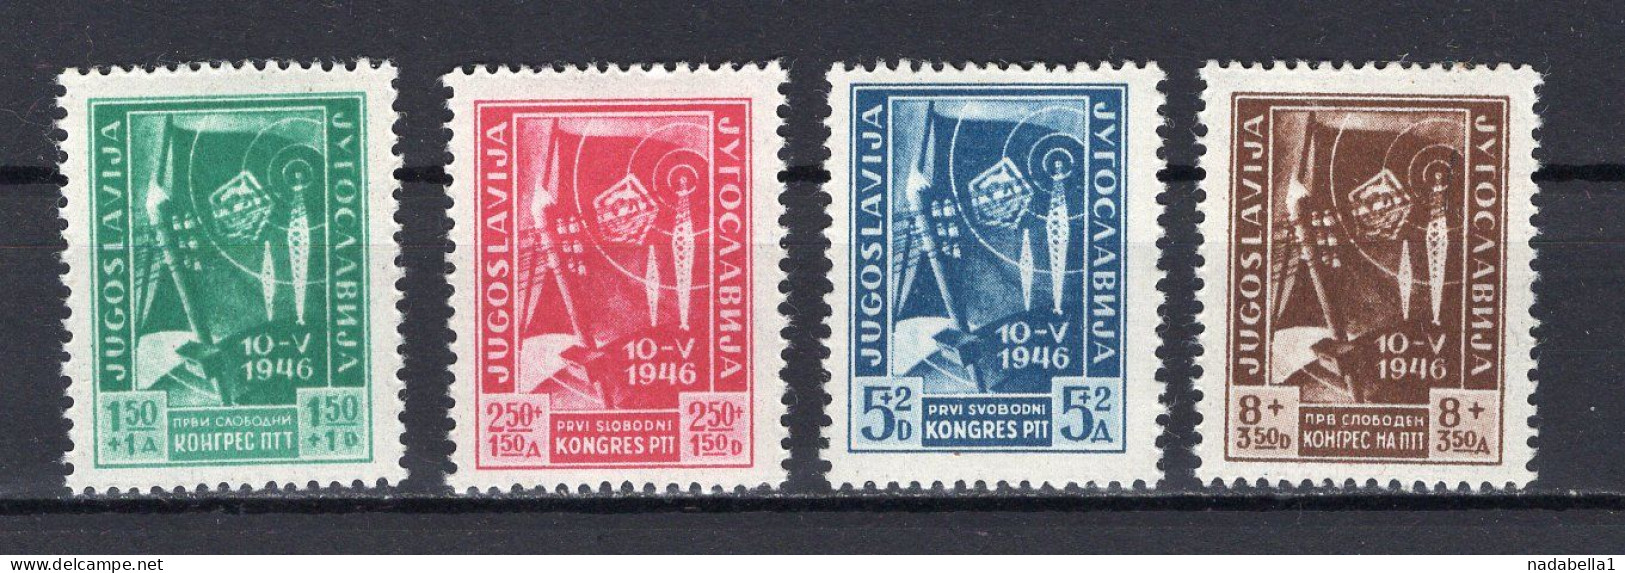 1946. YUGOSLAVIA,FIRST PTT CONGRESS,SET OF 4 STAMPS,MNH - Neufs